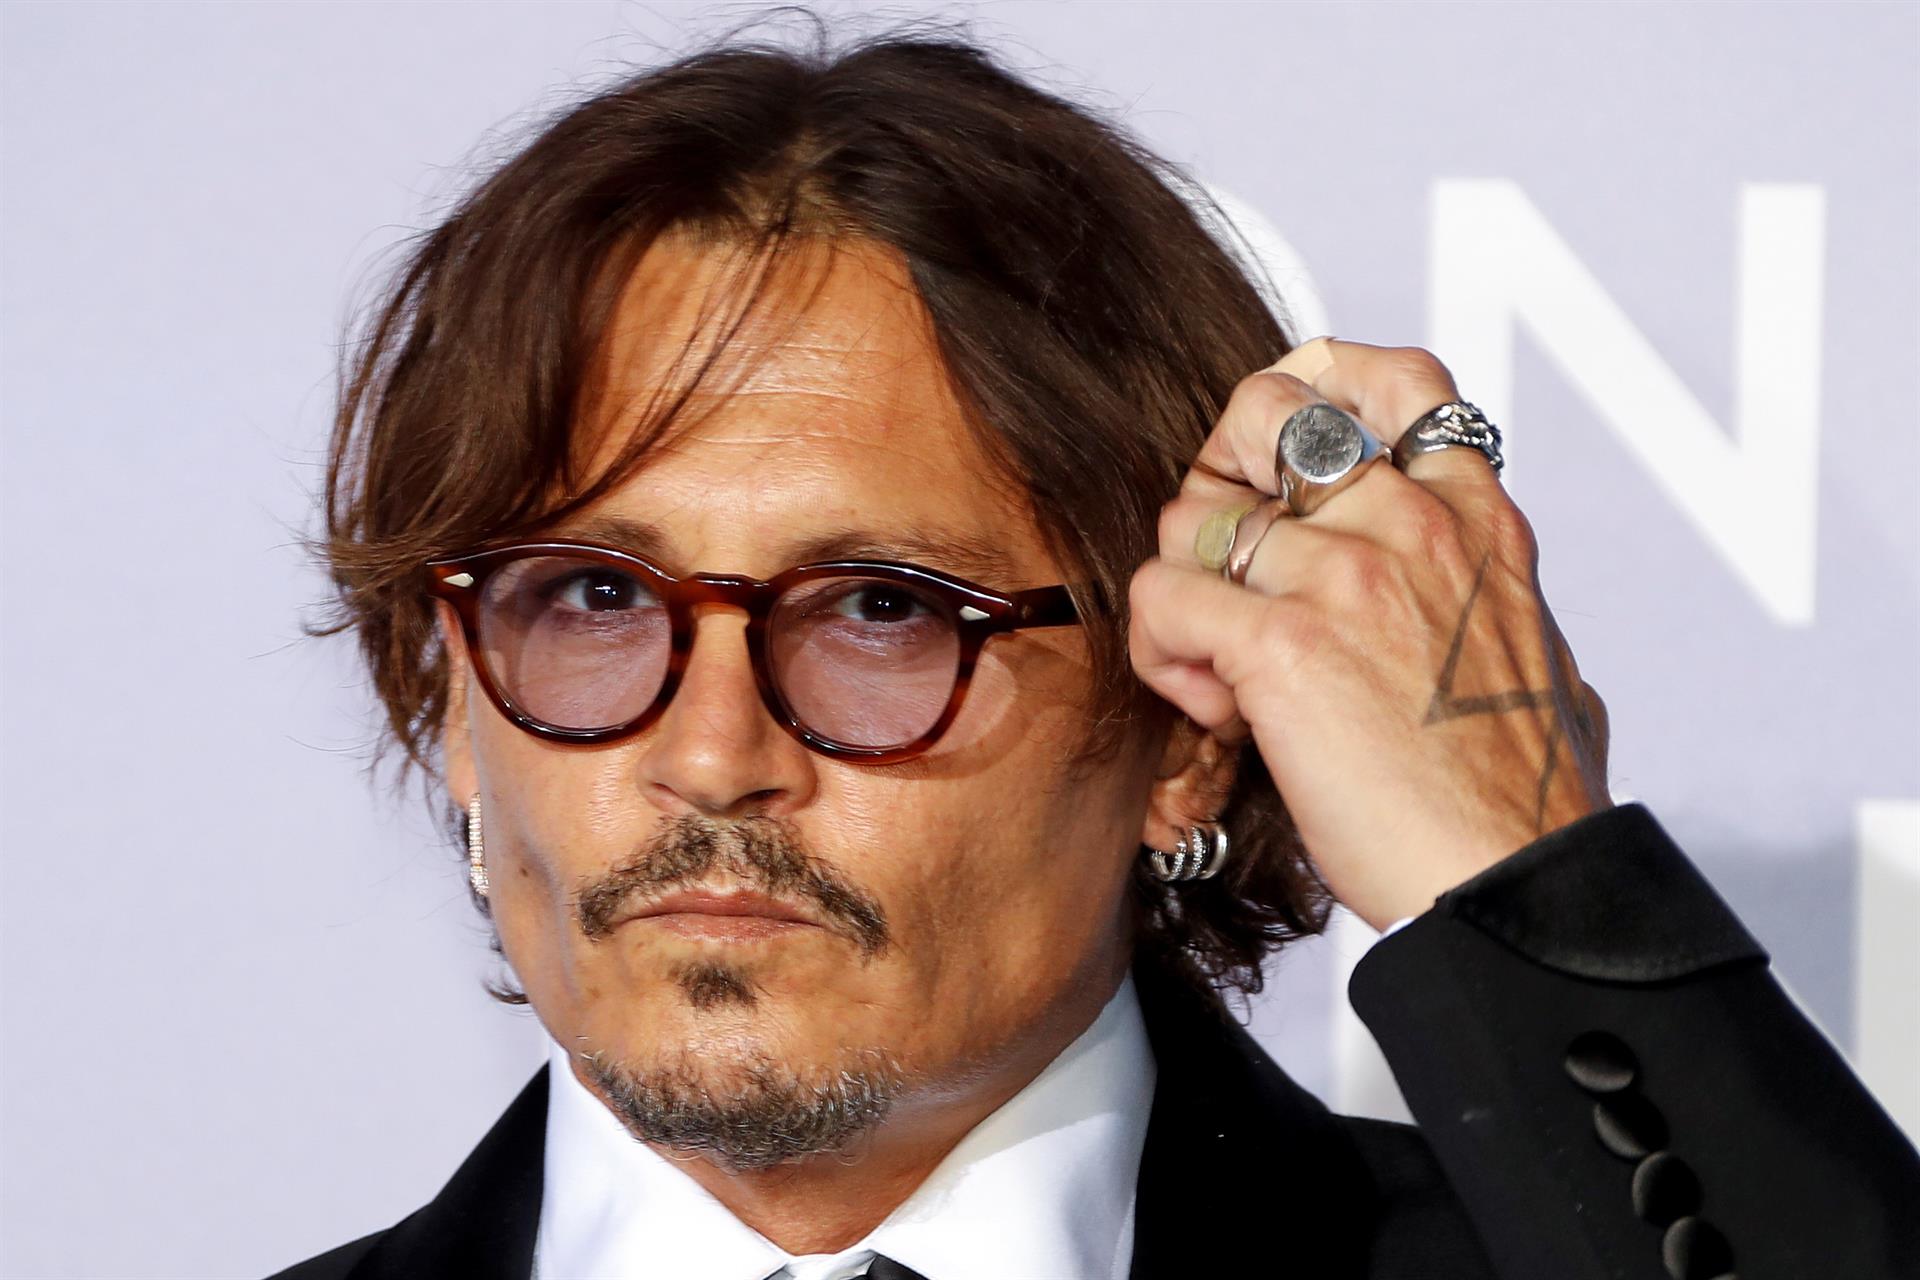 Mujeres Cineastas de España critica el premio Donostia a Depp por inoportuno